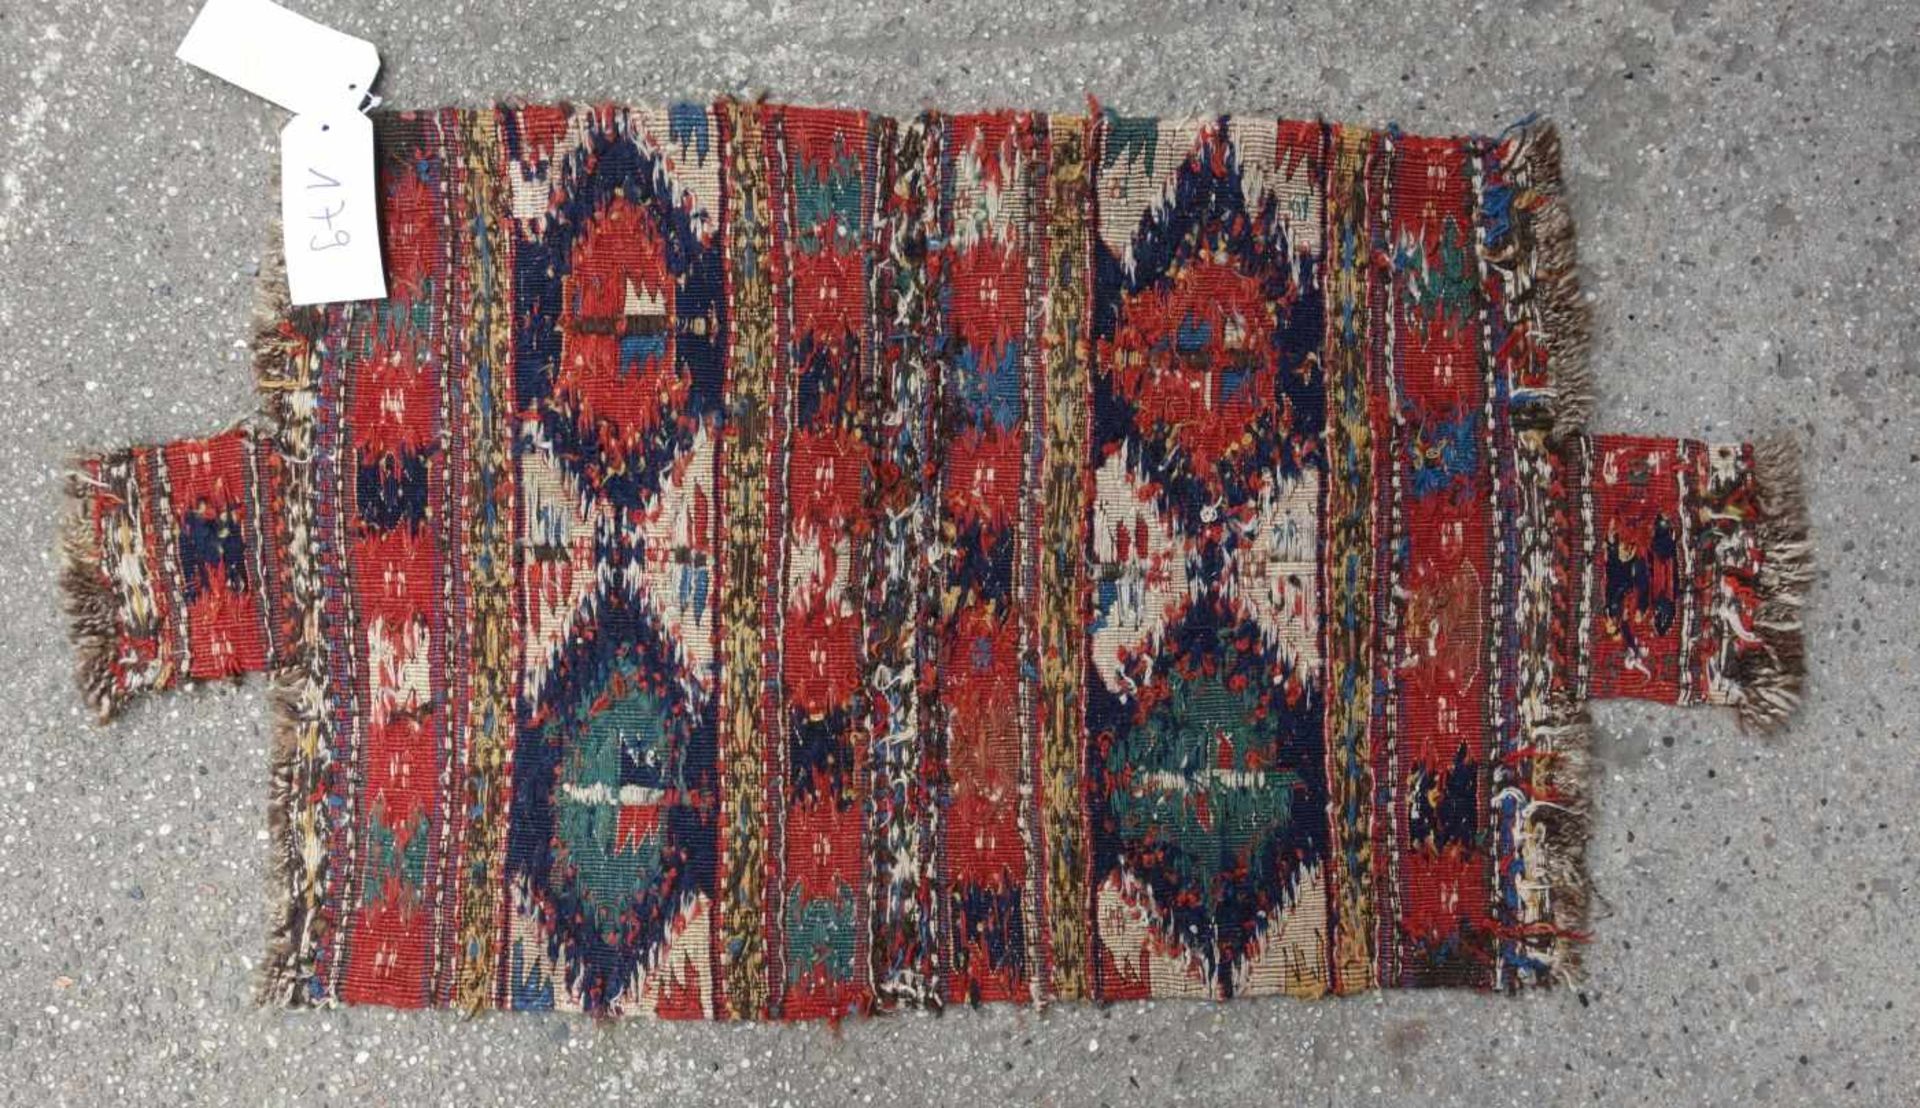 MAFRASCH / TASCHE / NOMADEN TEPPICH / rug, um 1880, Kaukasus, Nadelarbeit, Sammlerstück. Teppich - Image 4 of 5